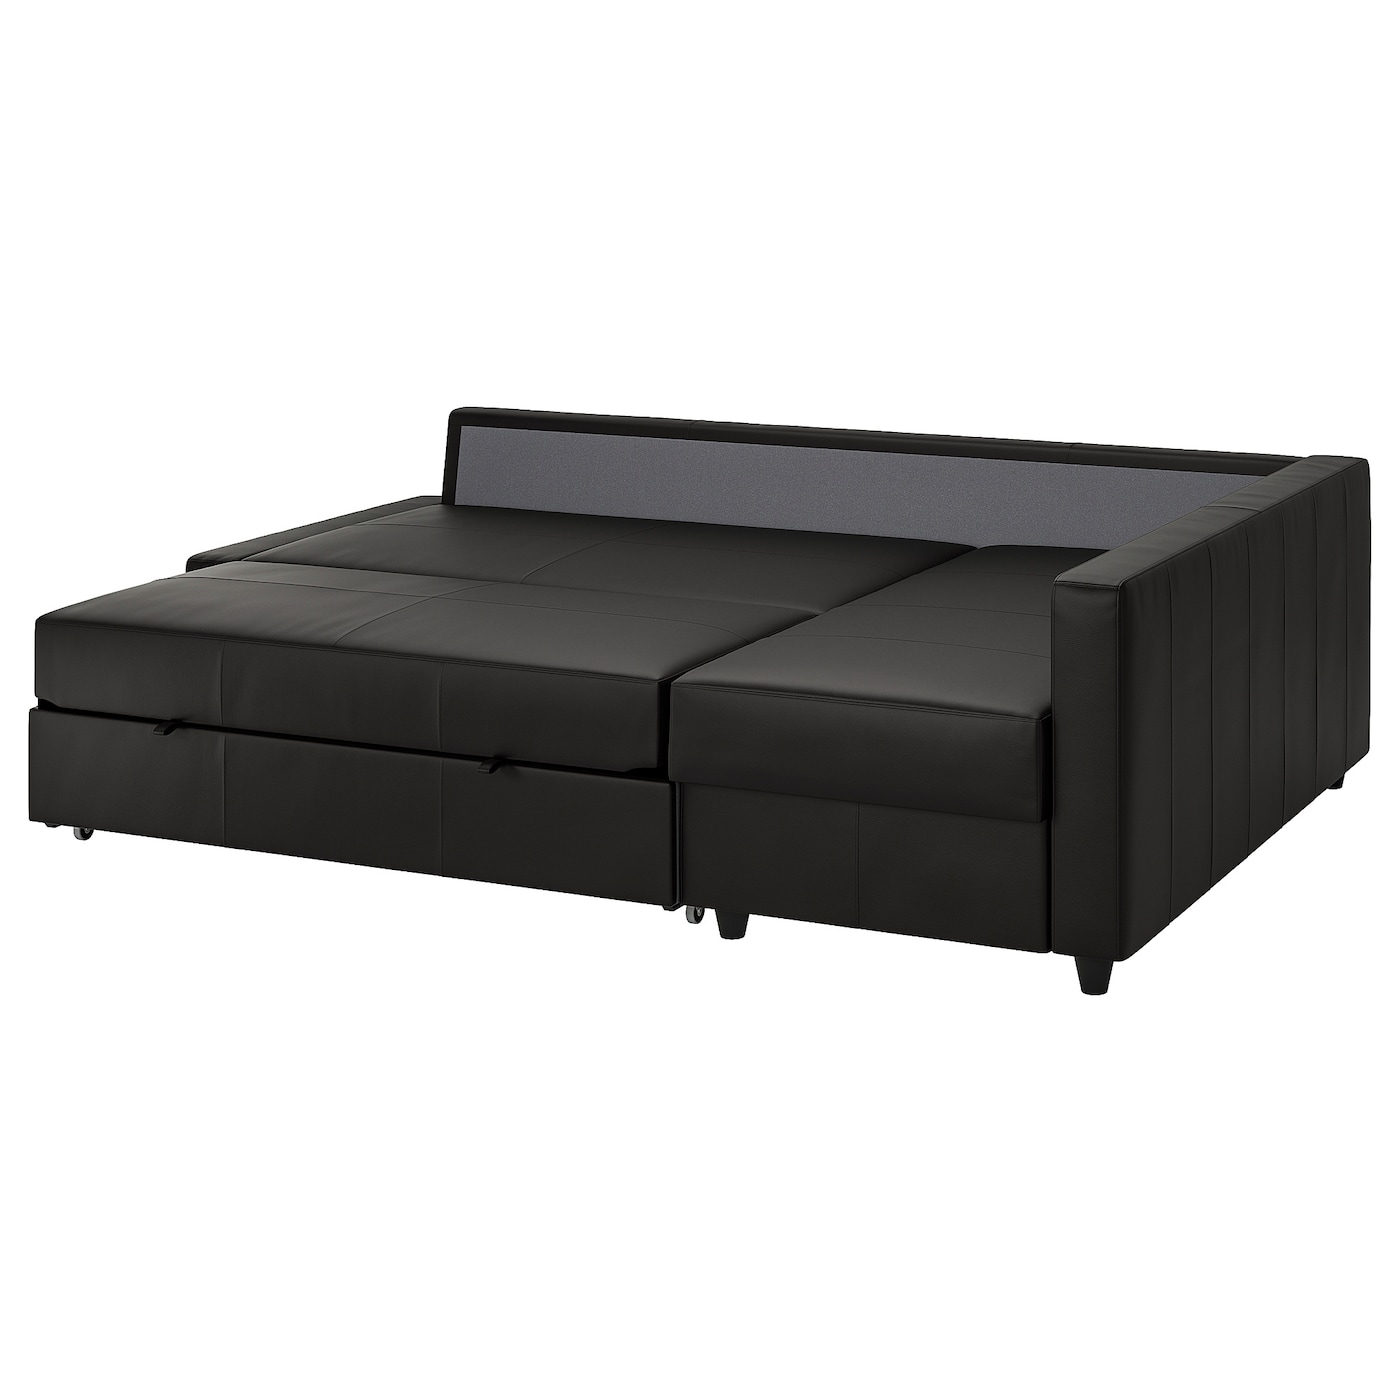 ФРИХЕТЕН Угловой диван-кровать + место для хранения, Бомстад черный FRIHETEN IKEA диван кровать угловой ткань непал гранд 7